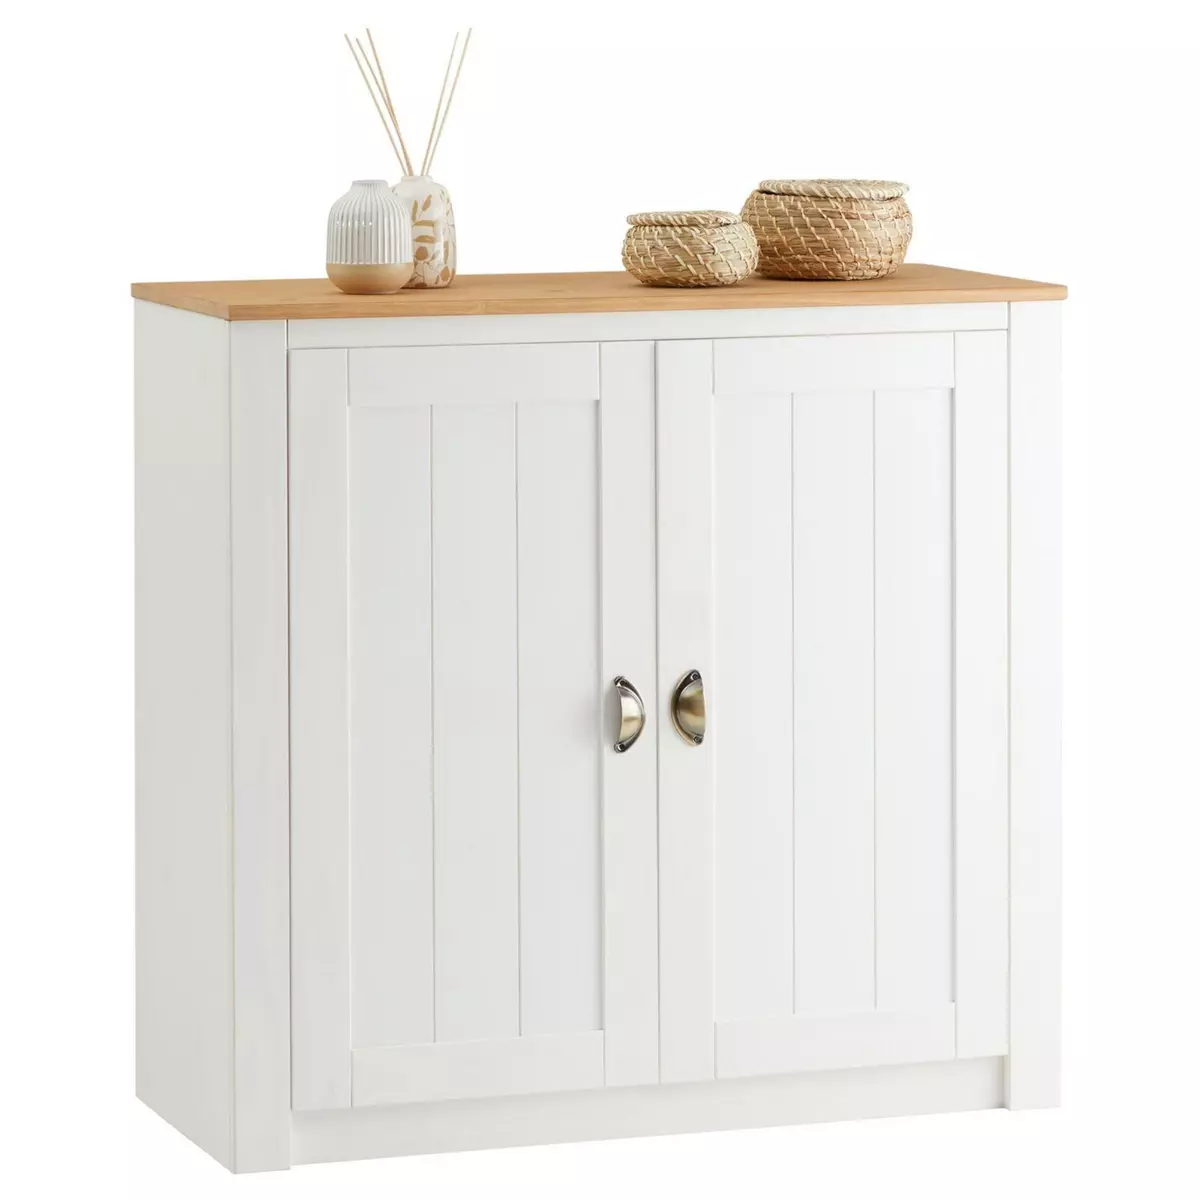 IDIMEX Buffet BOLTON meuble de rangement en bois au style classique, avec 2 portes, en pin massif lasuré blanc et brun